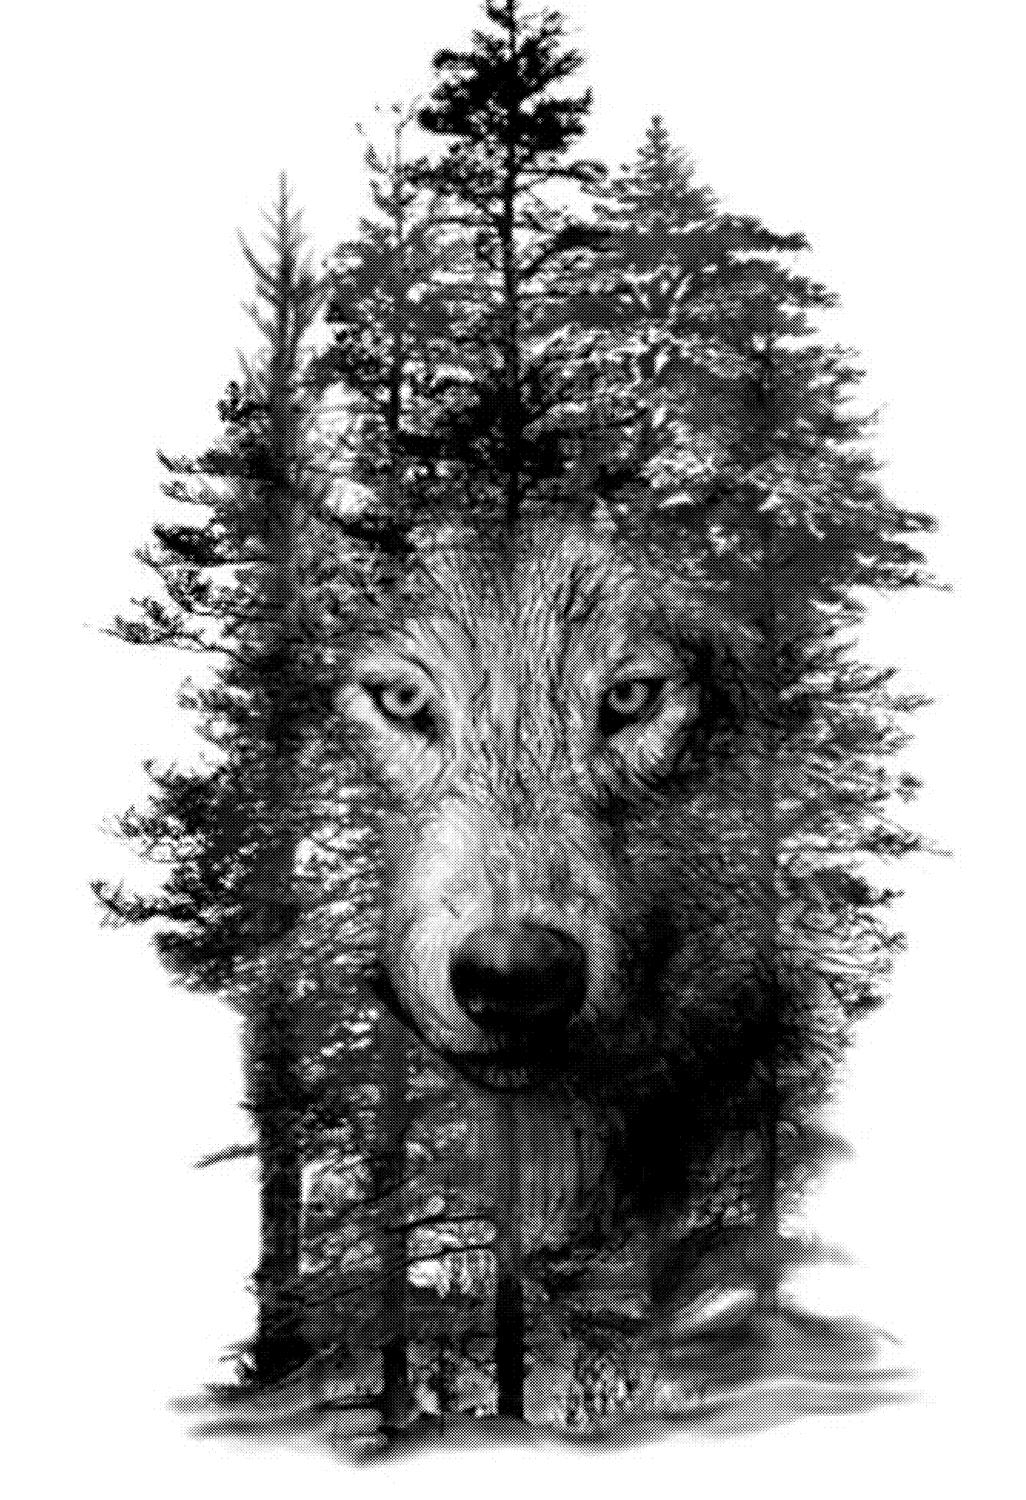 الذئب في قالب النقش بالليزر على الأشجار